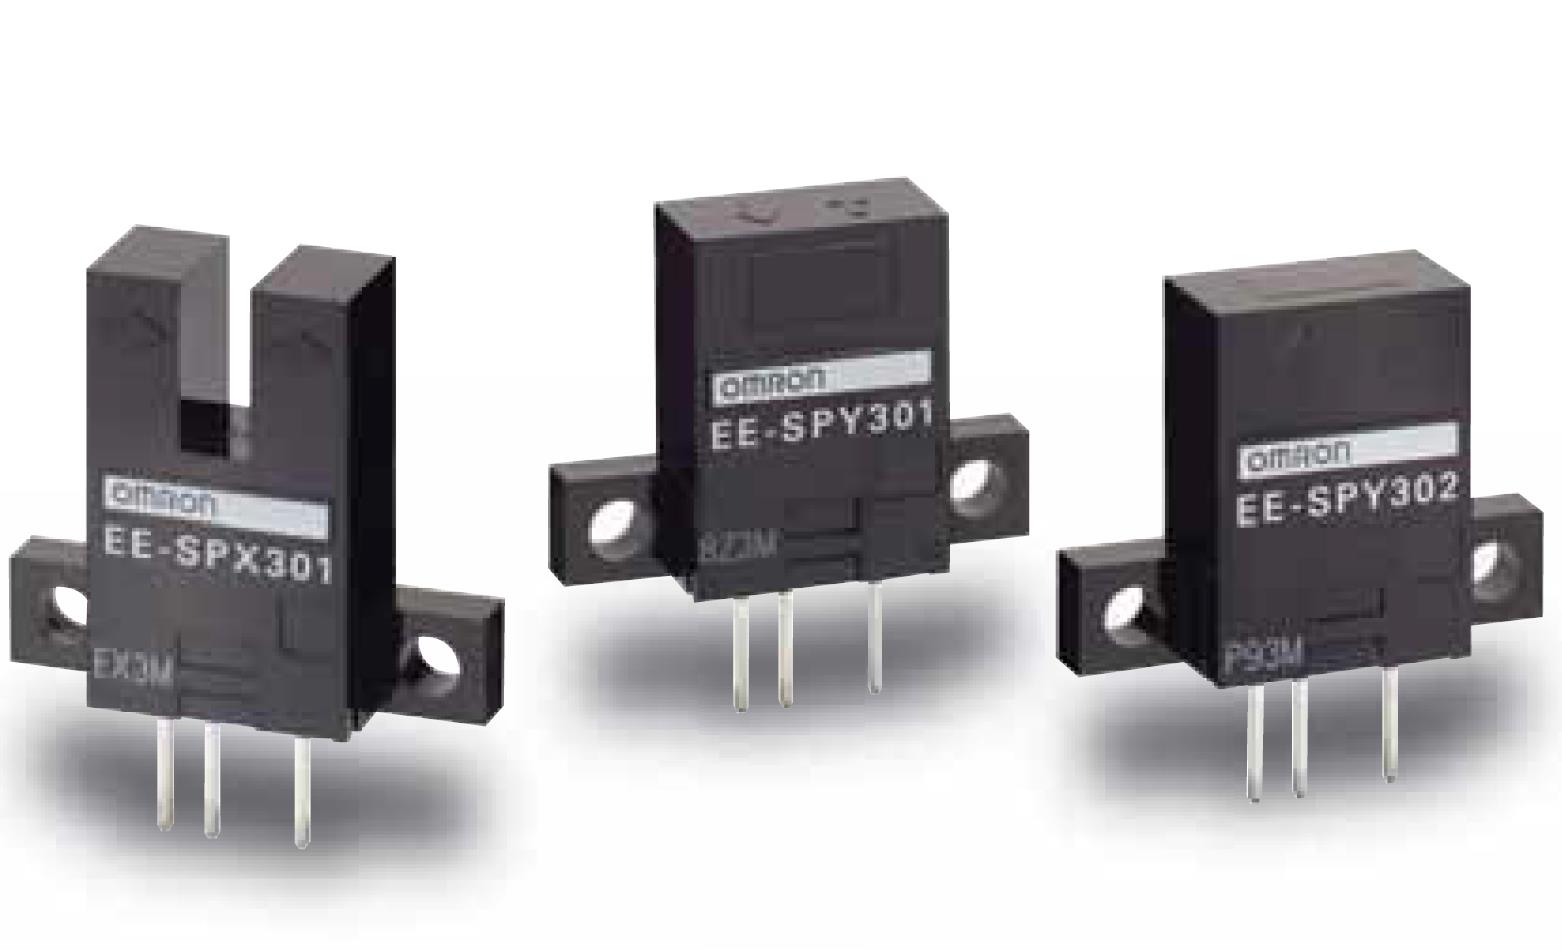 EE-SPX301 4方向指示灯提高视觉辨识性
欧姆龙凹槽型反射型接插件型光电传感器